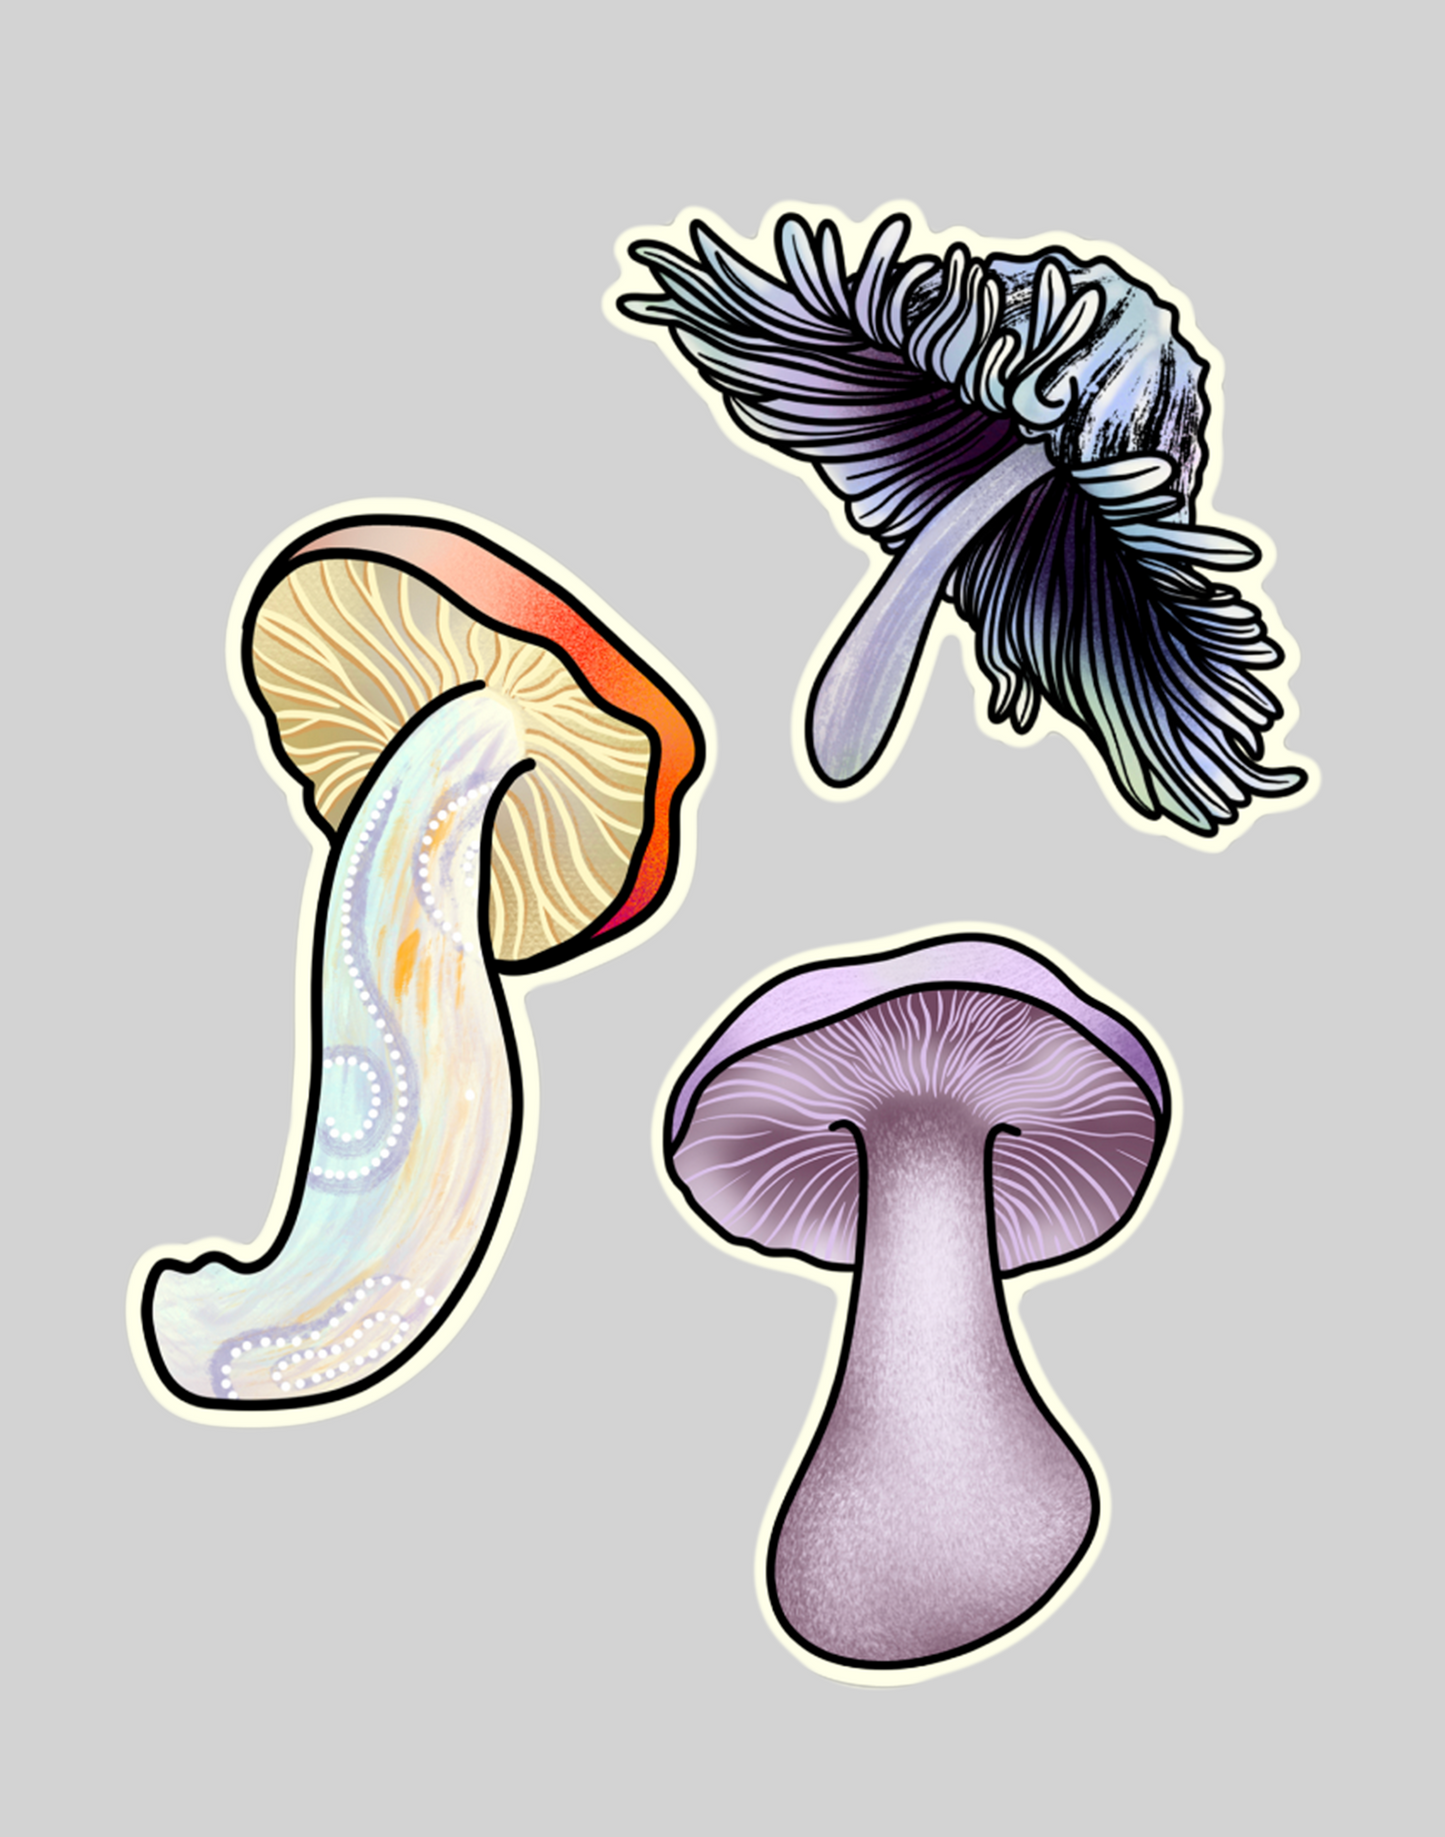 Mushroom Sticker Sheet 2